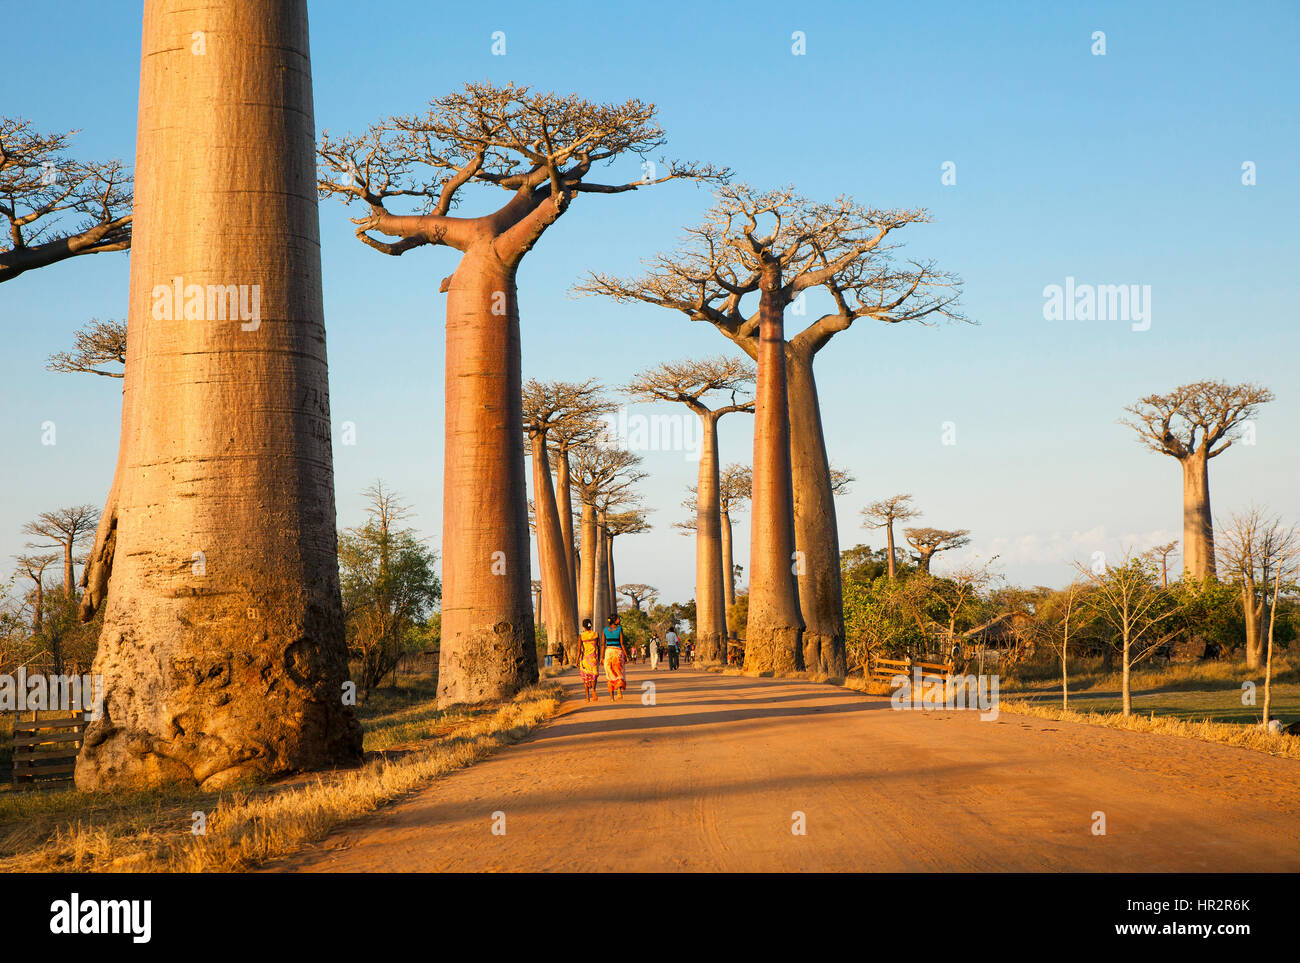 Allee der Baobabs in der Nähe von Morondava, Baobab Allee, Adansonia grandidieri, westlichen Madagaskar, von Monika Hrdinova/Dembinsky Foto Assoc Stockfoto